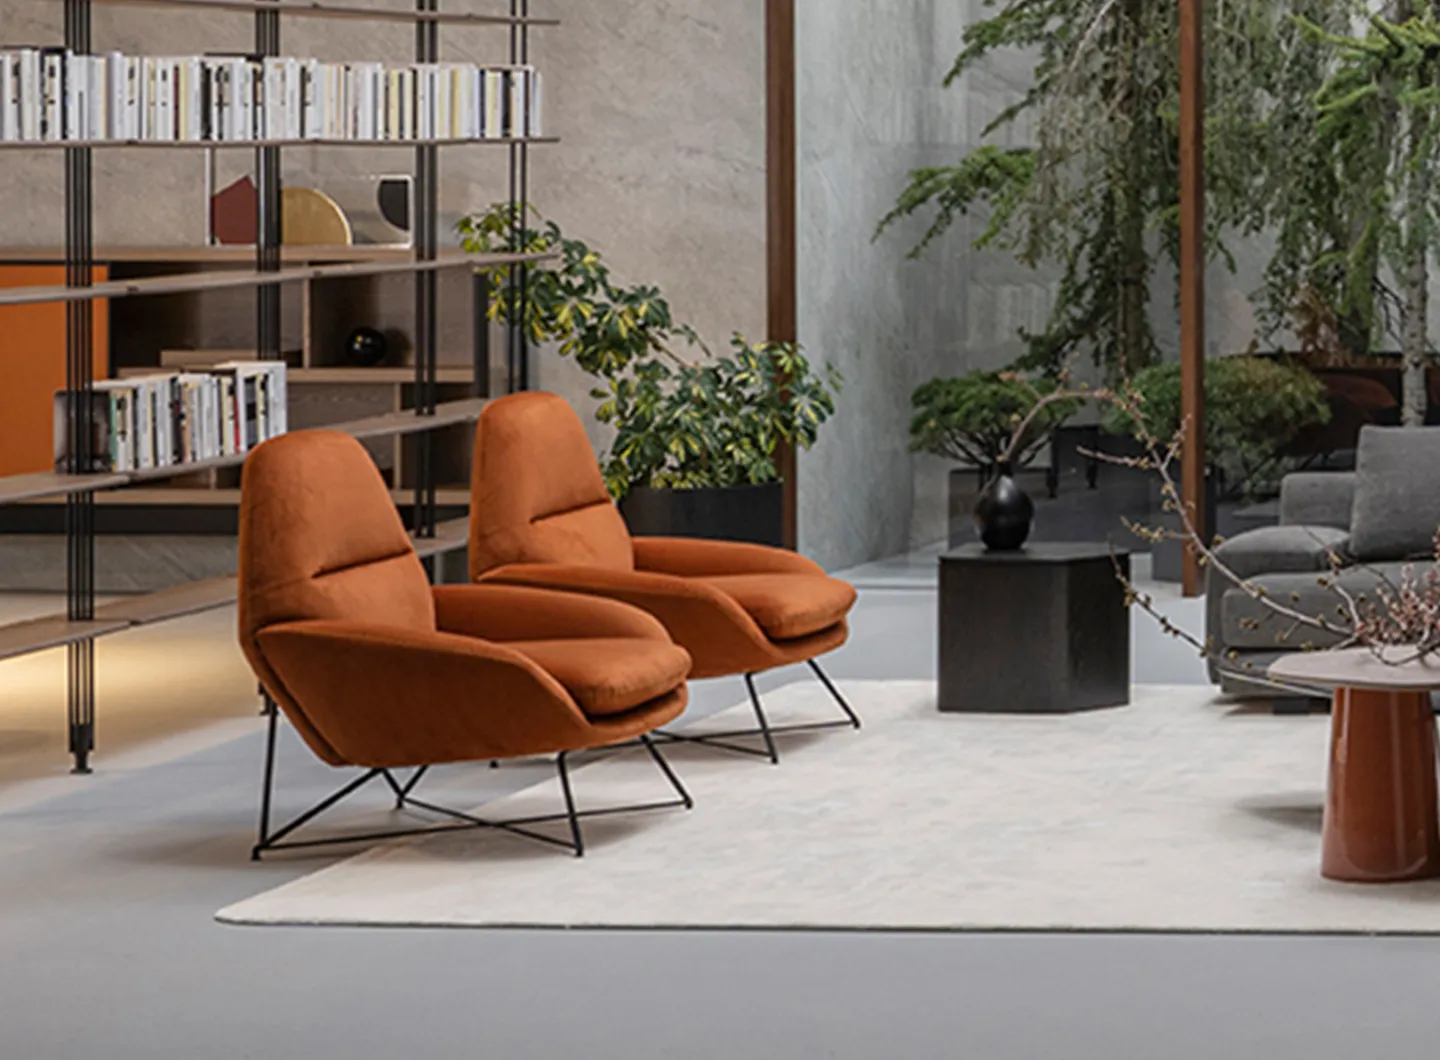 Corallina, Casa International 'Allover 2021' collection designed by Mauro Lipparini